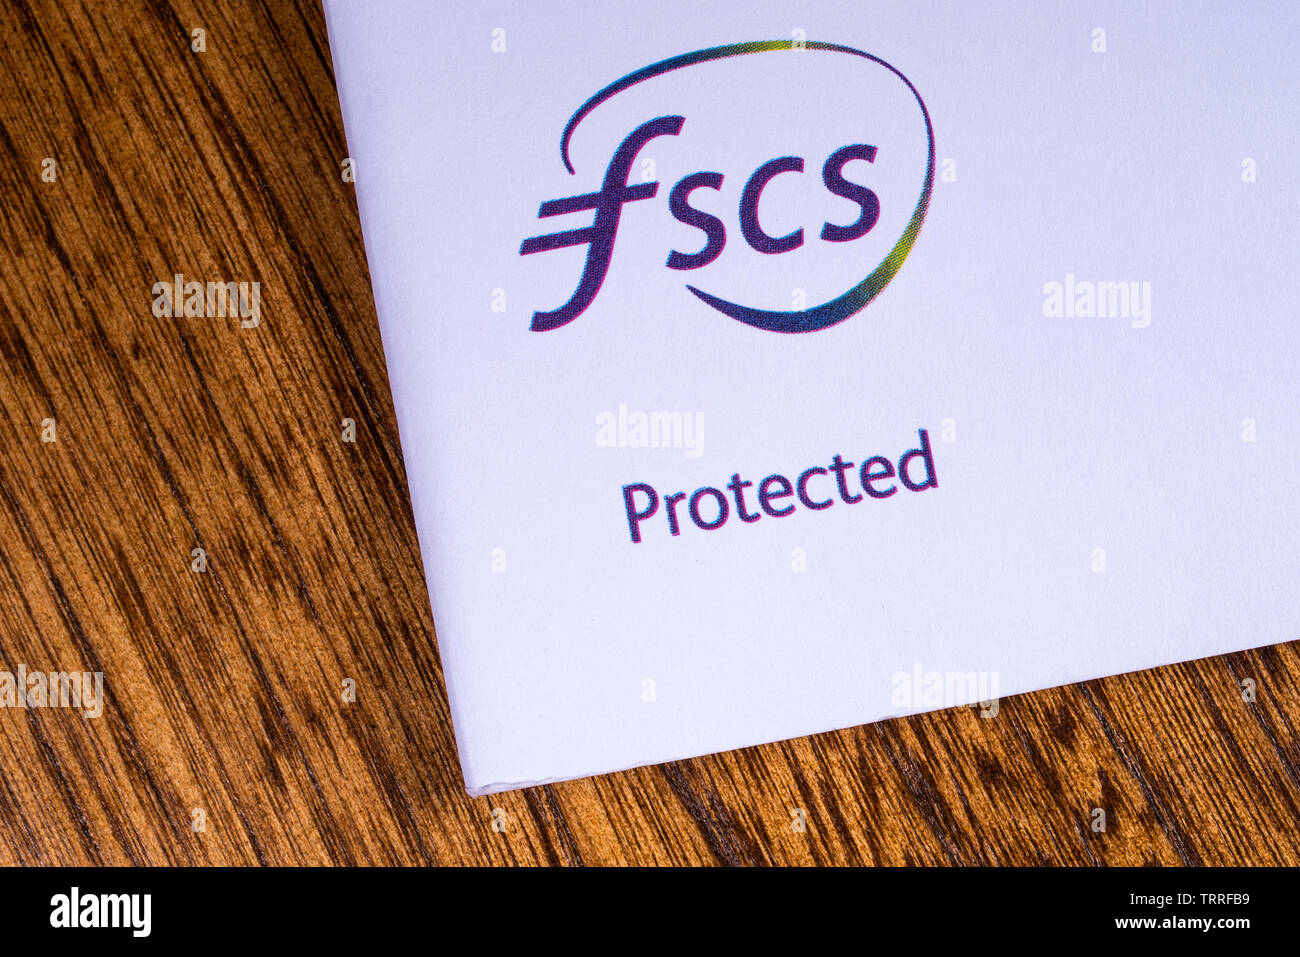 London, UK, 11. Juni 2019: eine Nahaufnahme des FSCS - Financial Services Compensation Scheme logo, abgebildet auf eine Informationsbroschüre. Stockfoto